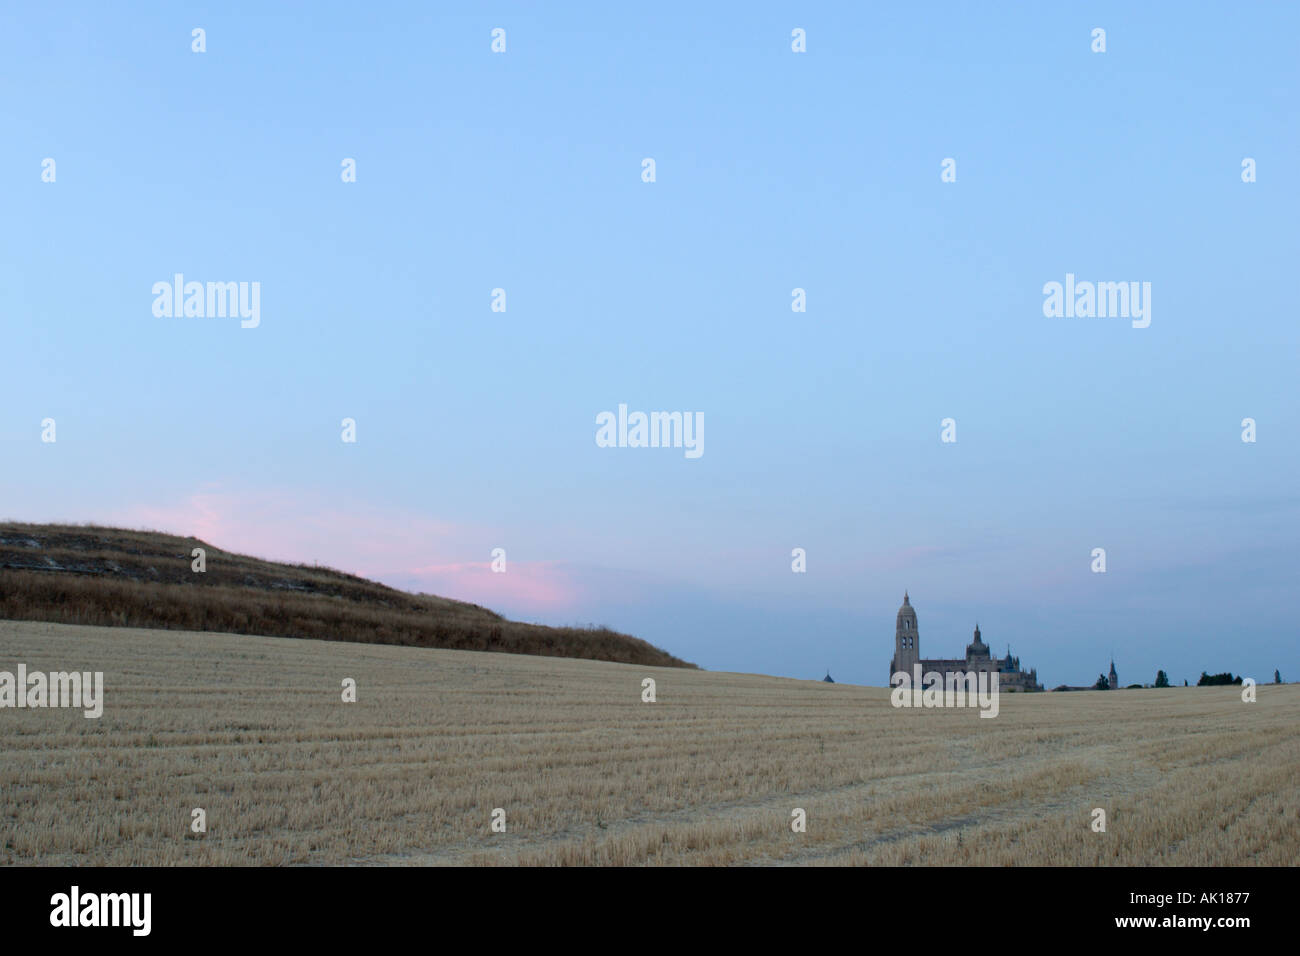 Paesaggio al tramonto con la Cattedrale di Segovia nella distanza, Castilla y Leon, Spagna Foto Stock